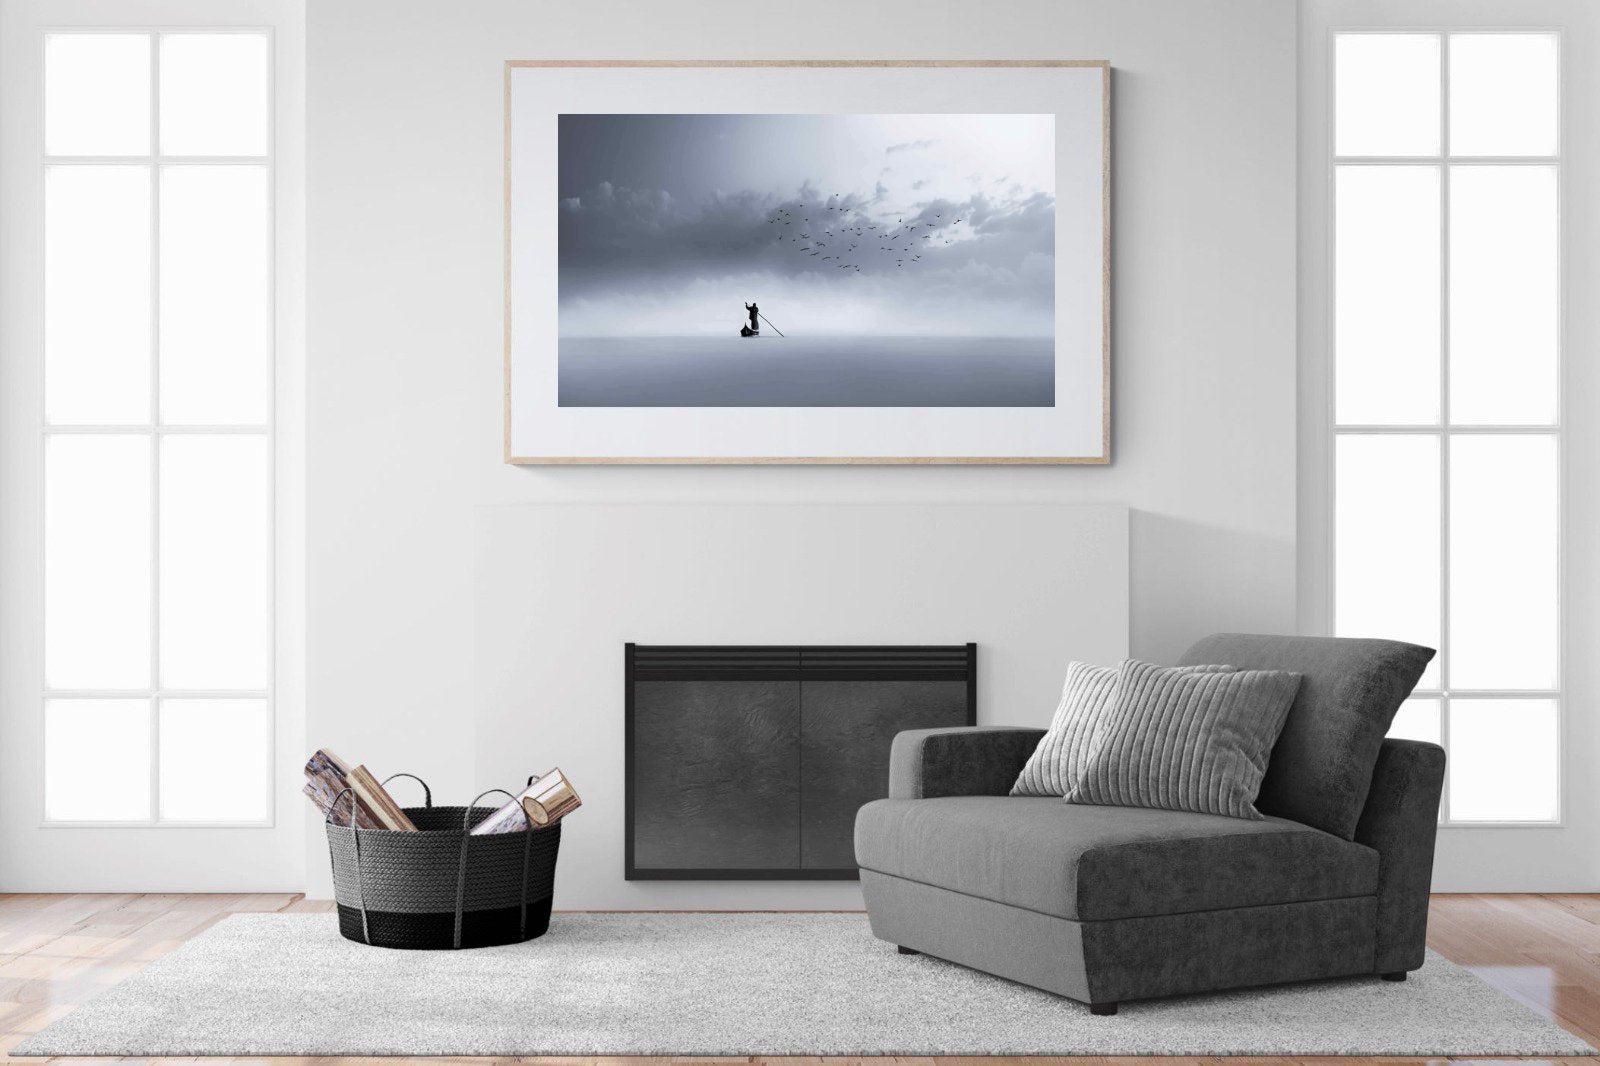 Oarsman-Wall_Art-150 x 100cm-Framed Print-Wood-Pixalot